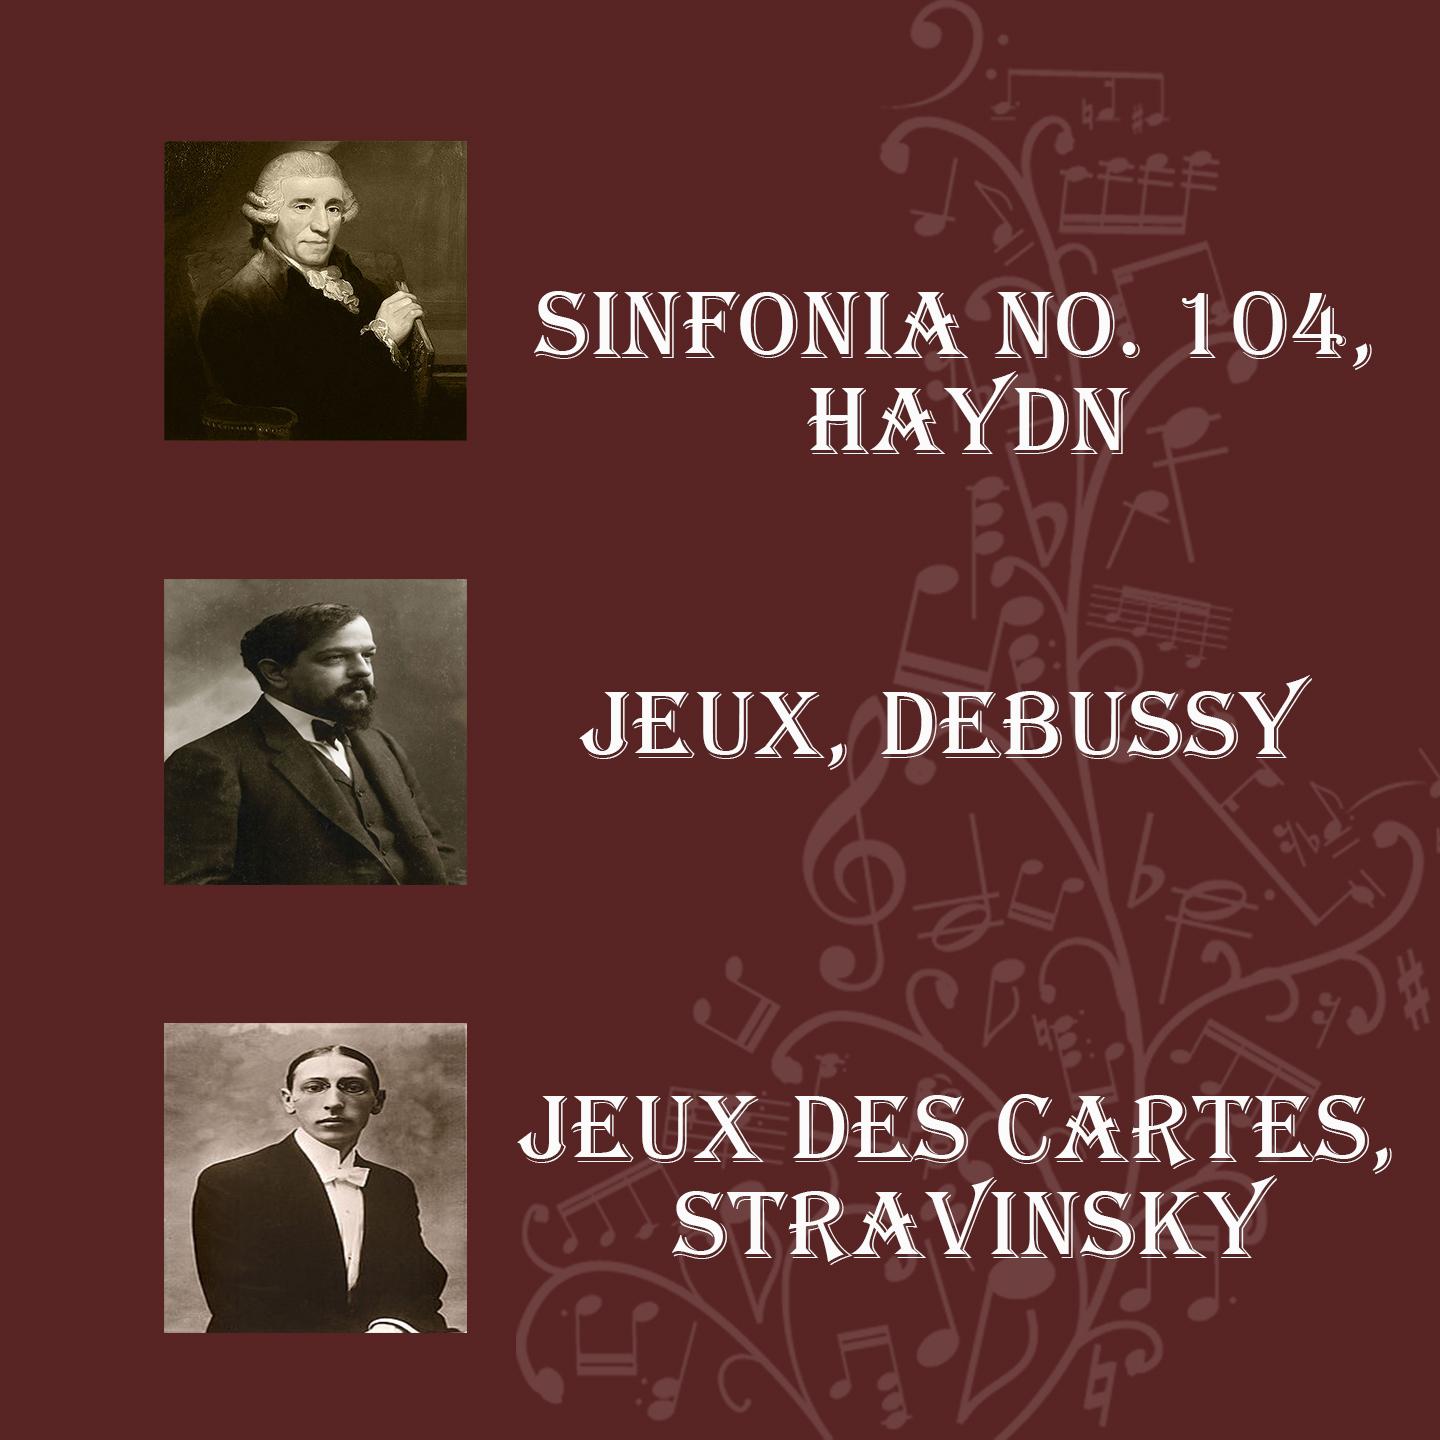 Sinfonia No. 104, Haydn - Jeux, Debussy - Jeux Des Cartes, Stravinsky